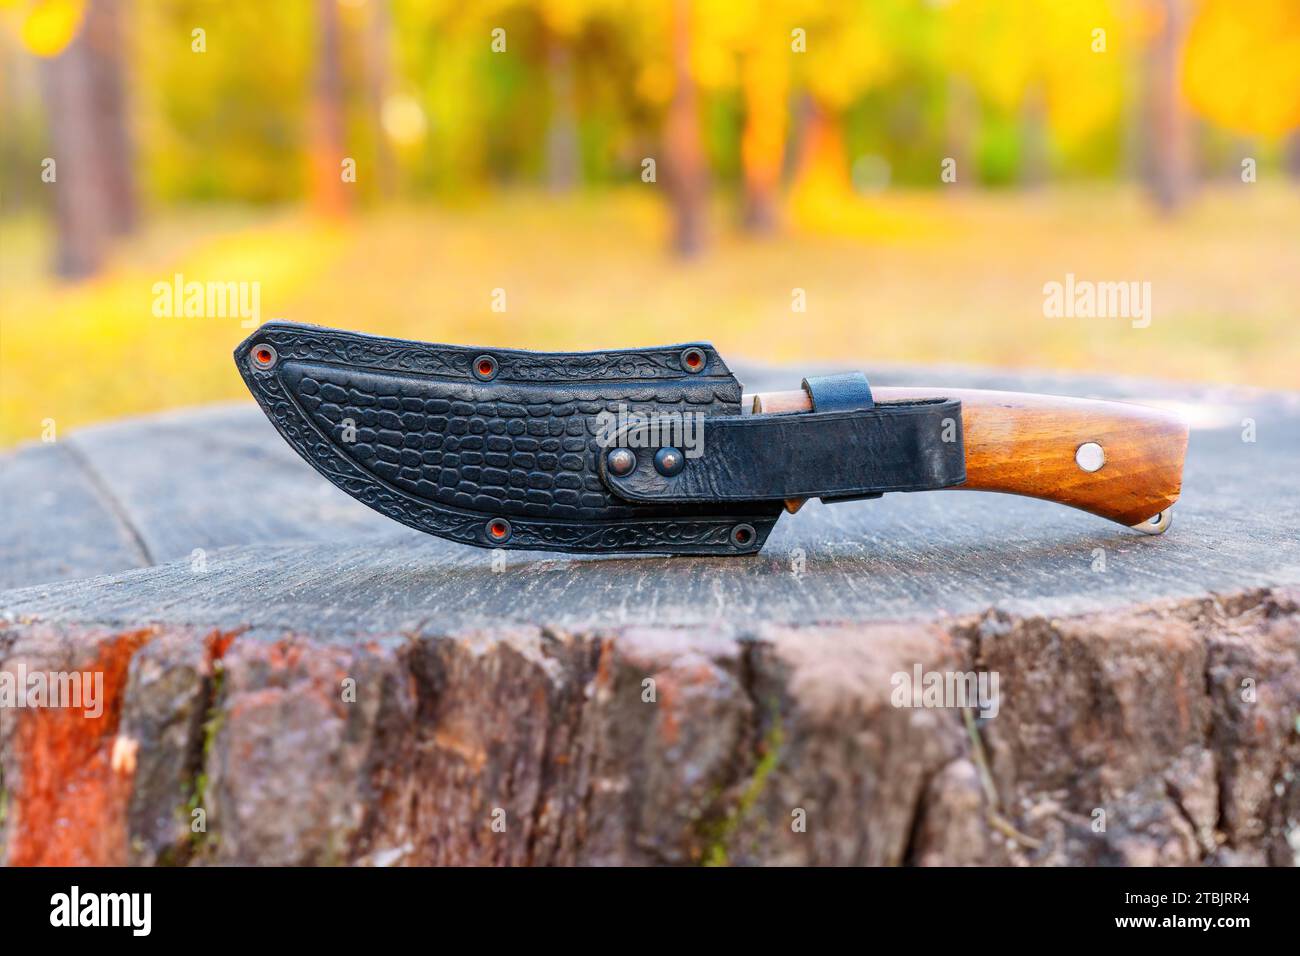 Das Jagdmesser mit einem reichen Holzgriff, der in einer Lederhülle befestigt ist, liegt auf einem rustikalen Baumstamm im Herzen eines Herbstwaldes. Robuster Charme von f Stockfoto